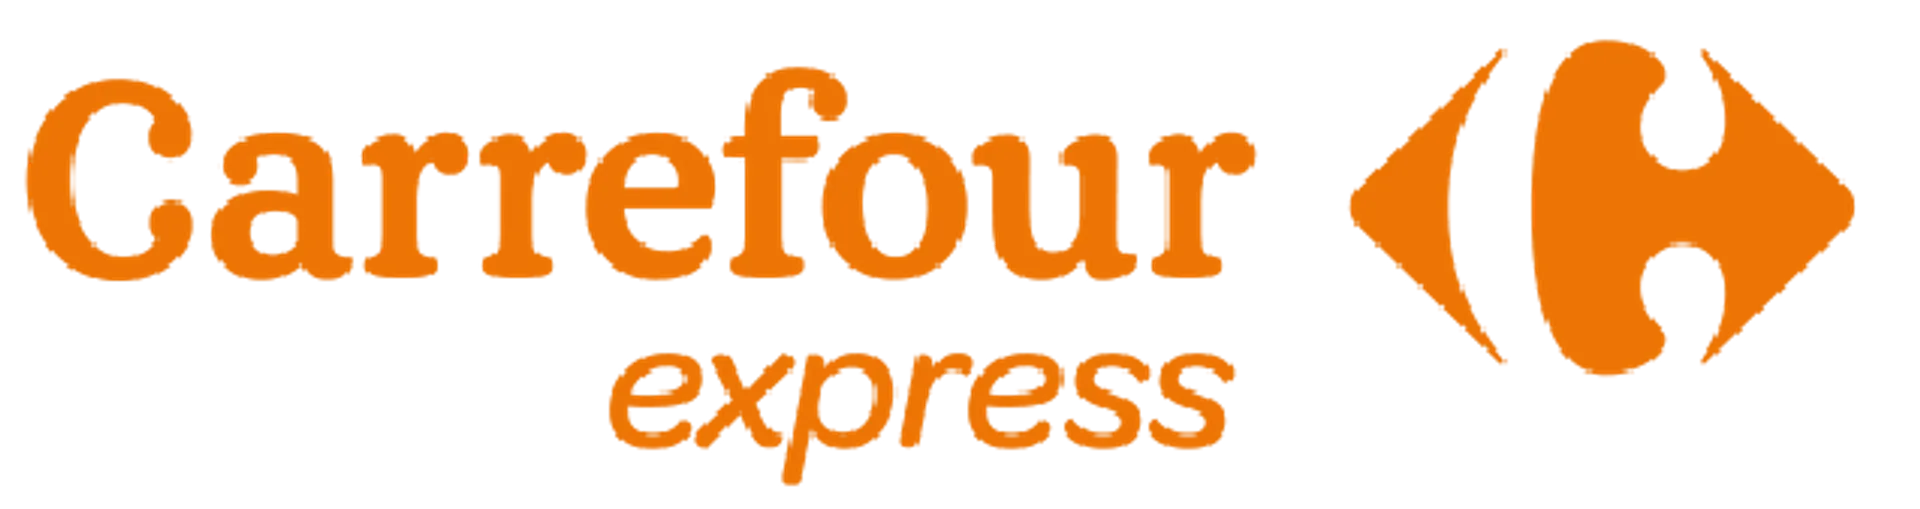 CARREFOUR EXPRESS logo de catálogo